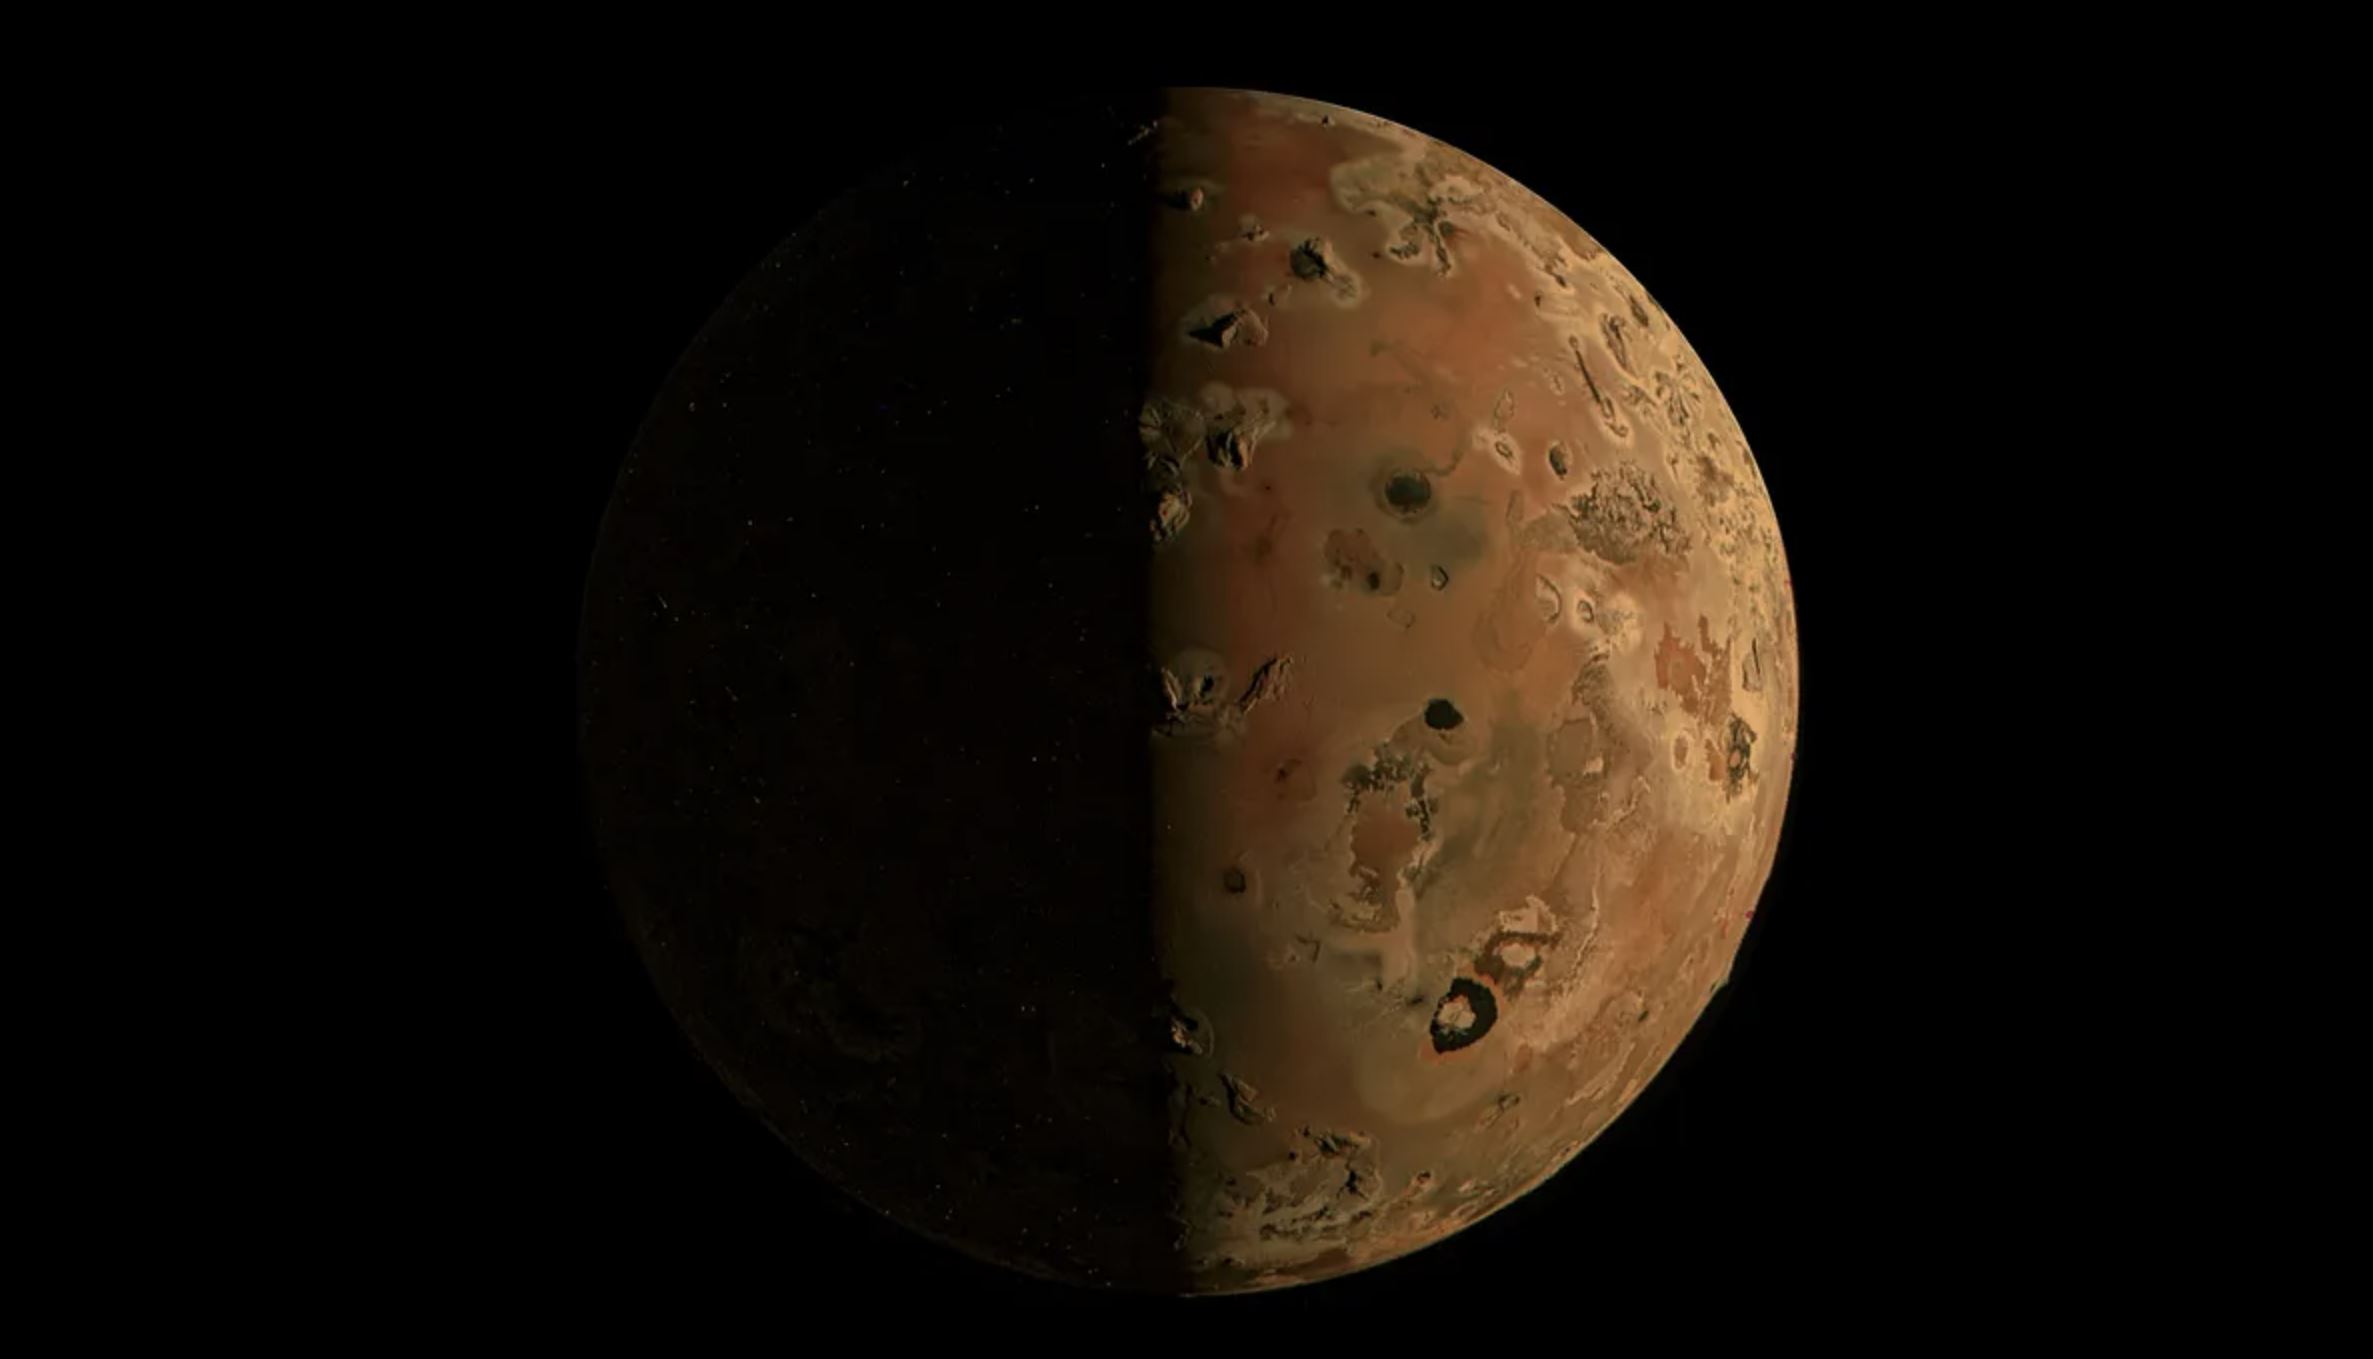 Slika Jupiterovog mjeseca Ija. Juno/NASA.